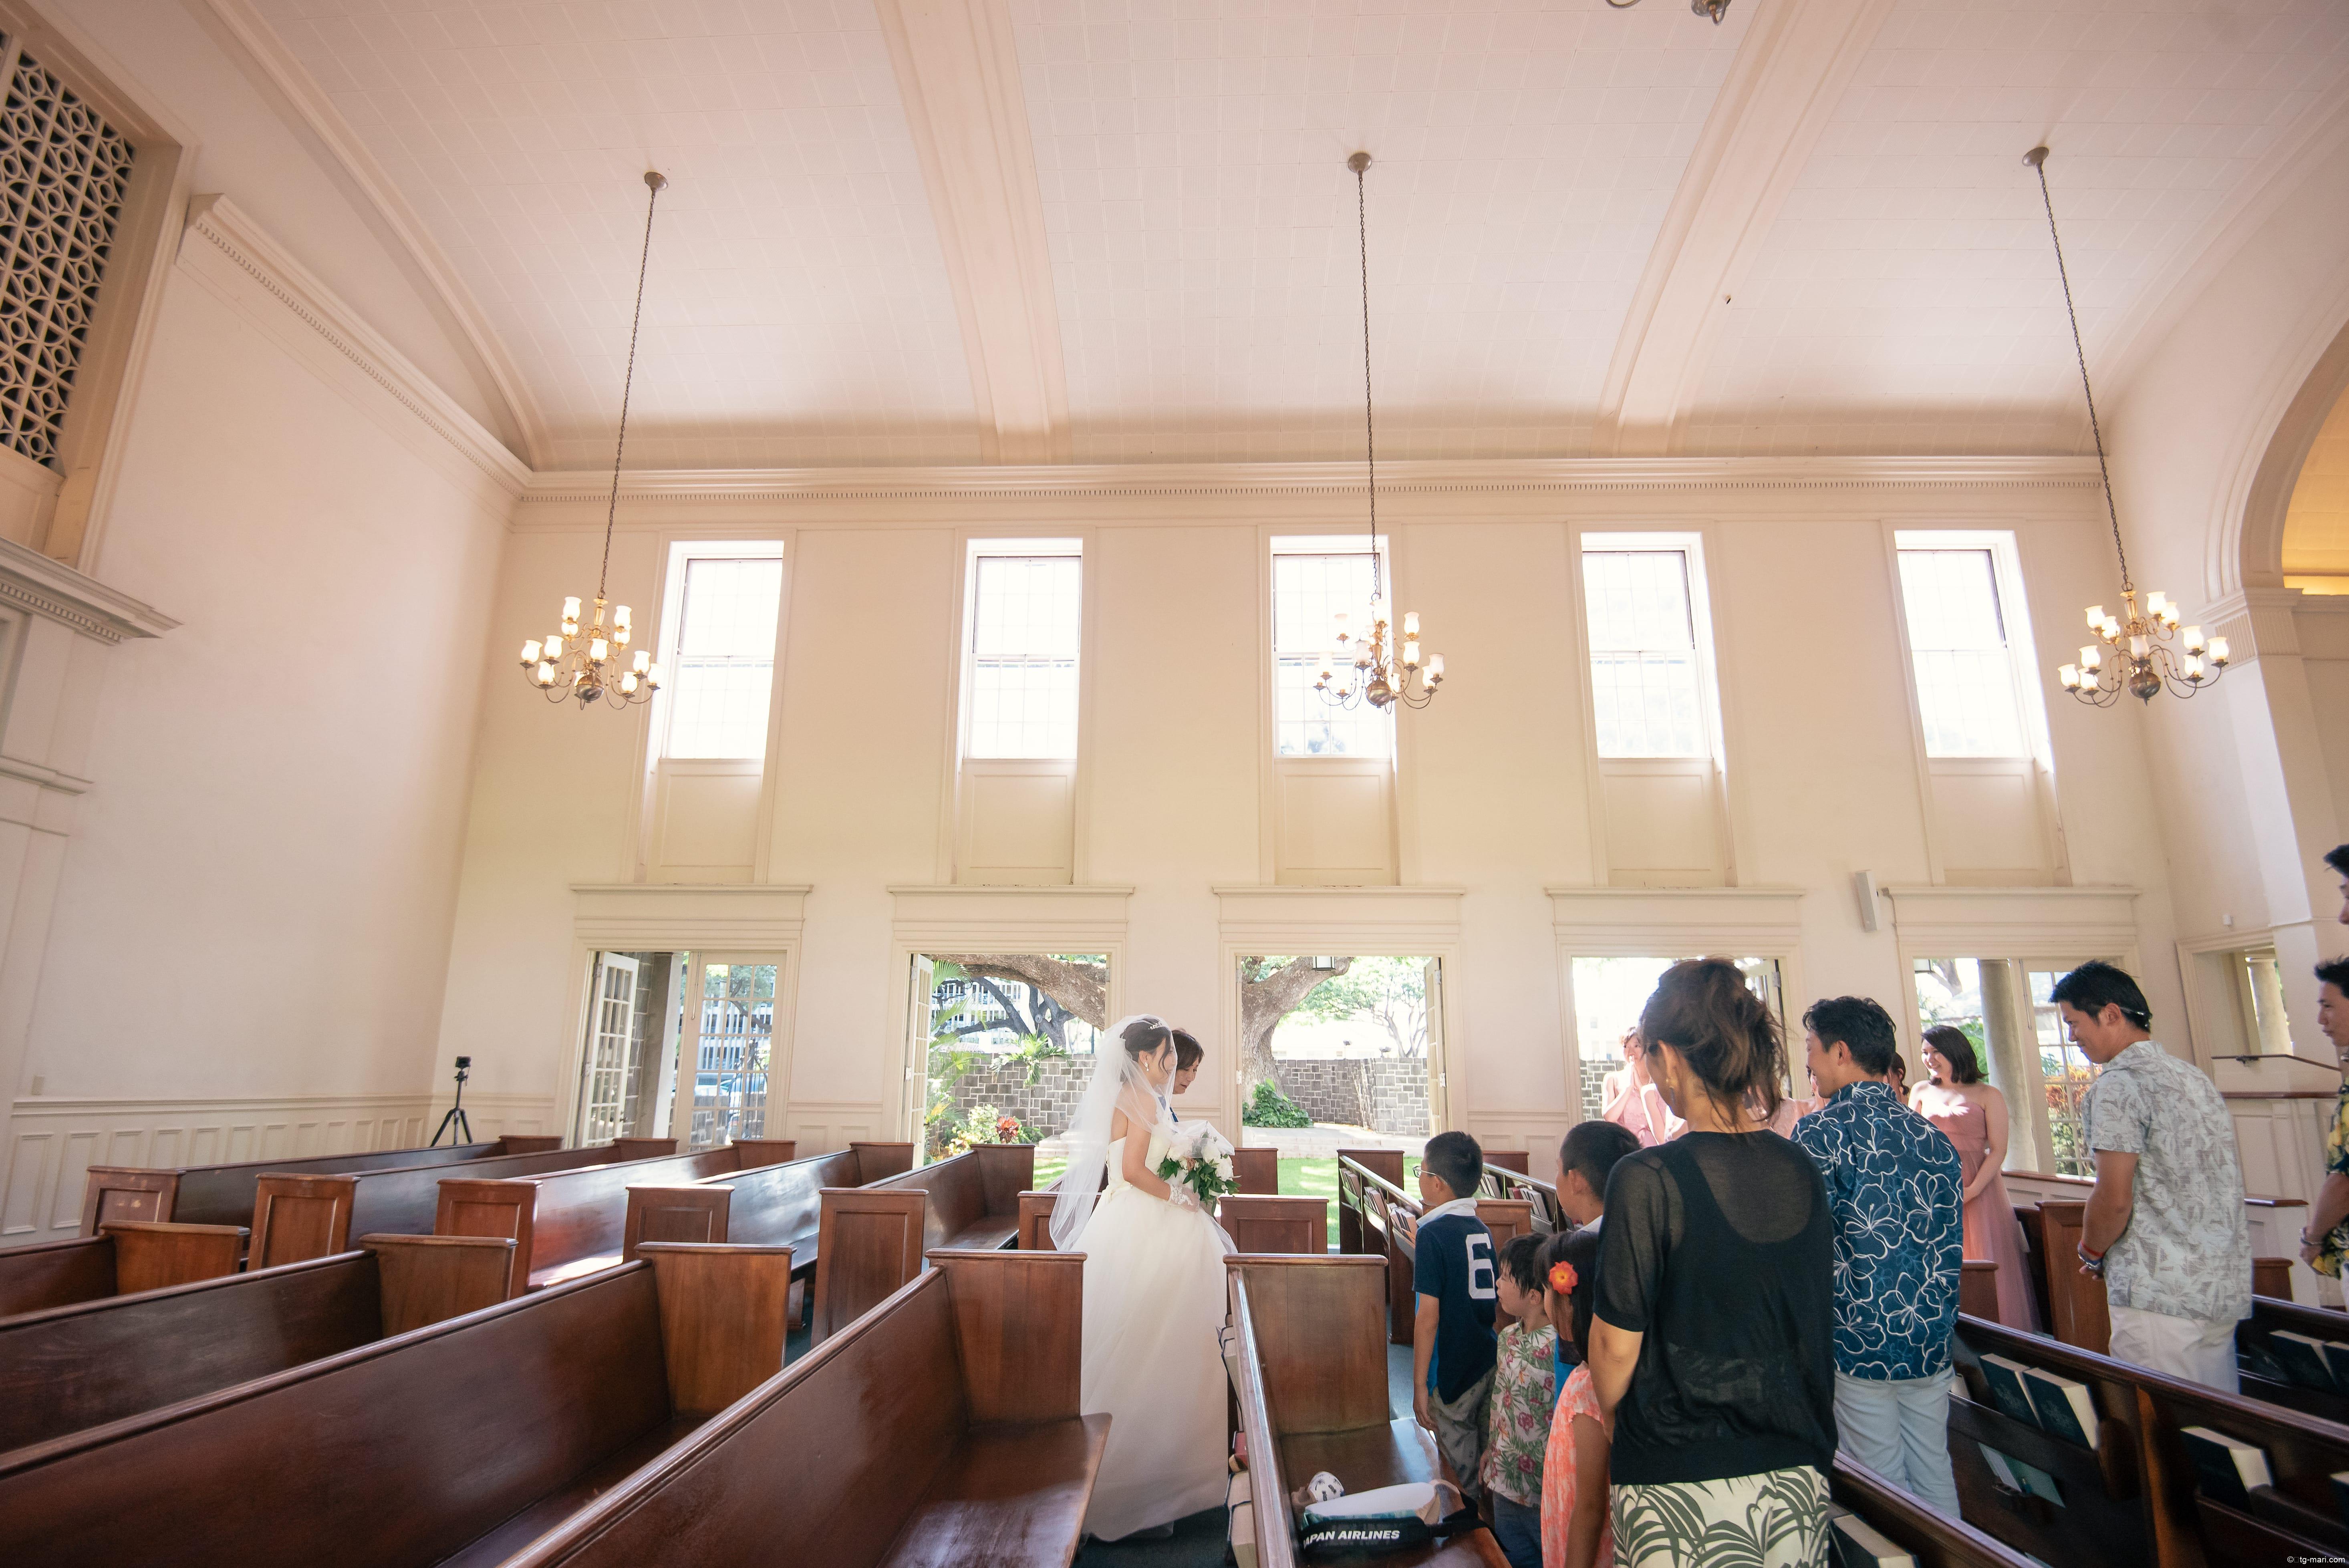 一目惚れしたハワイの小さな教会「セントラルユニオン中聖堂」 | 働く 